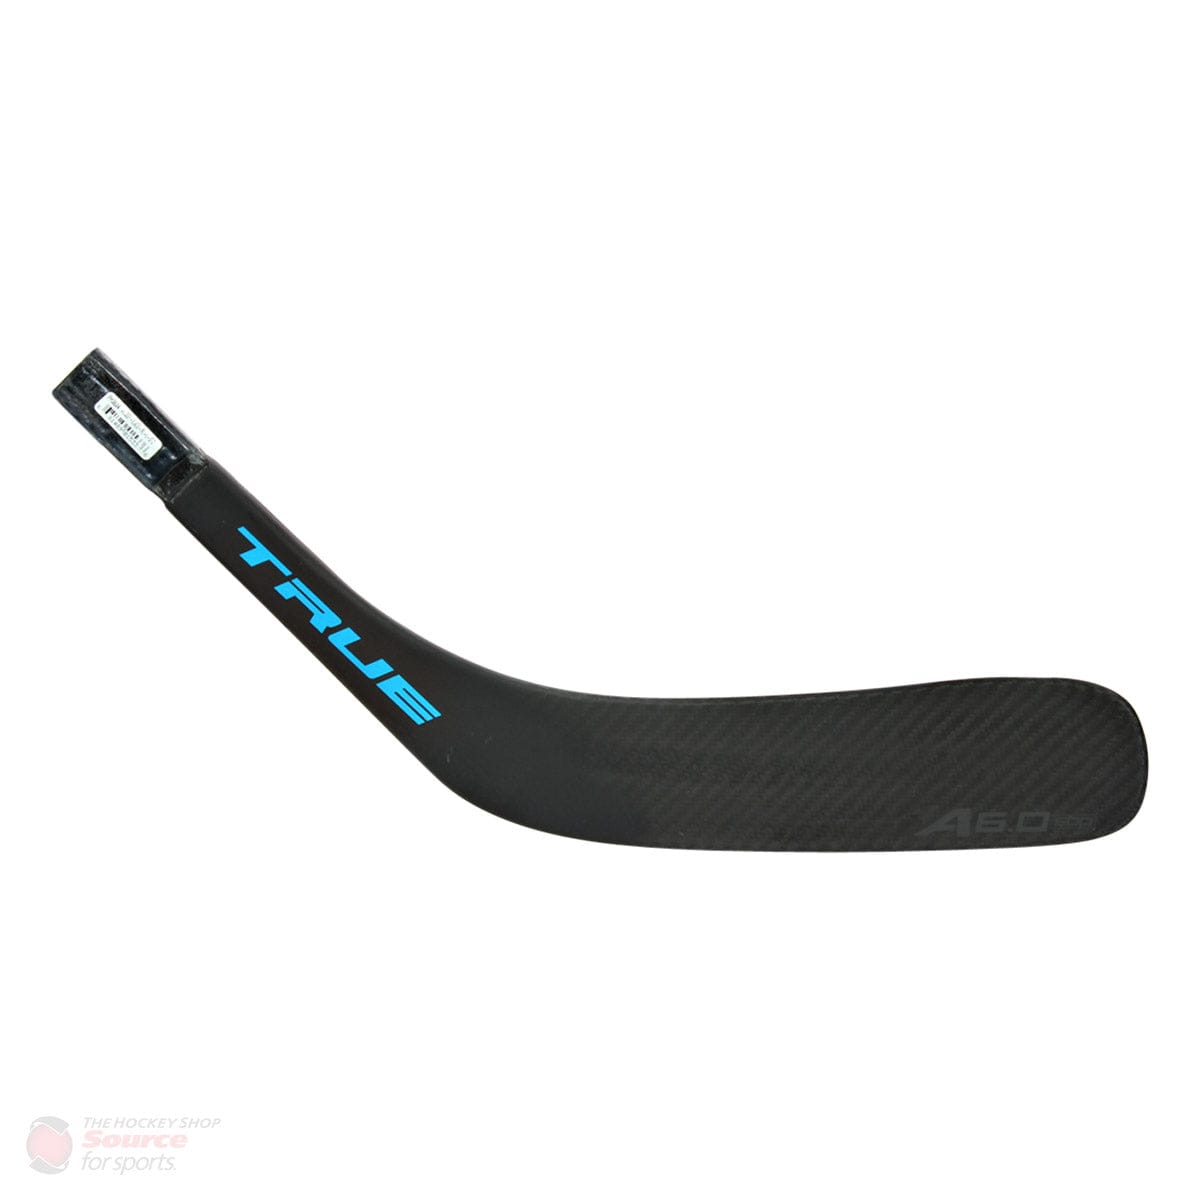 TRUE A6.0 SBP Standard Senior Composite Hockey Blade